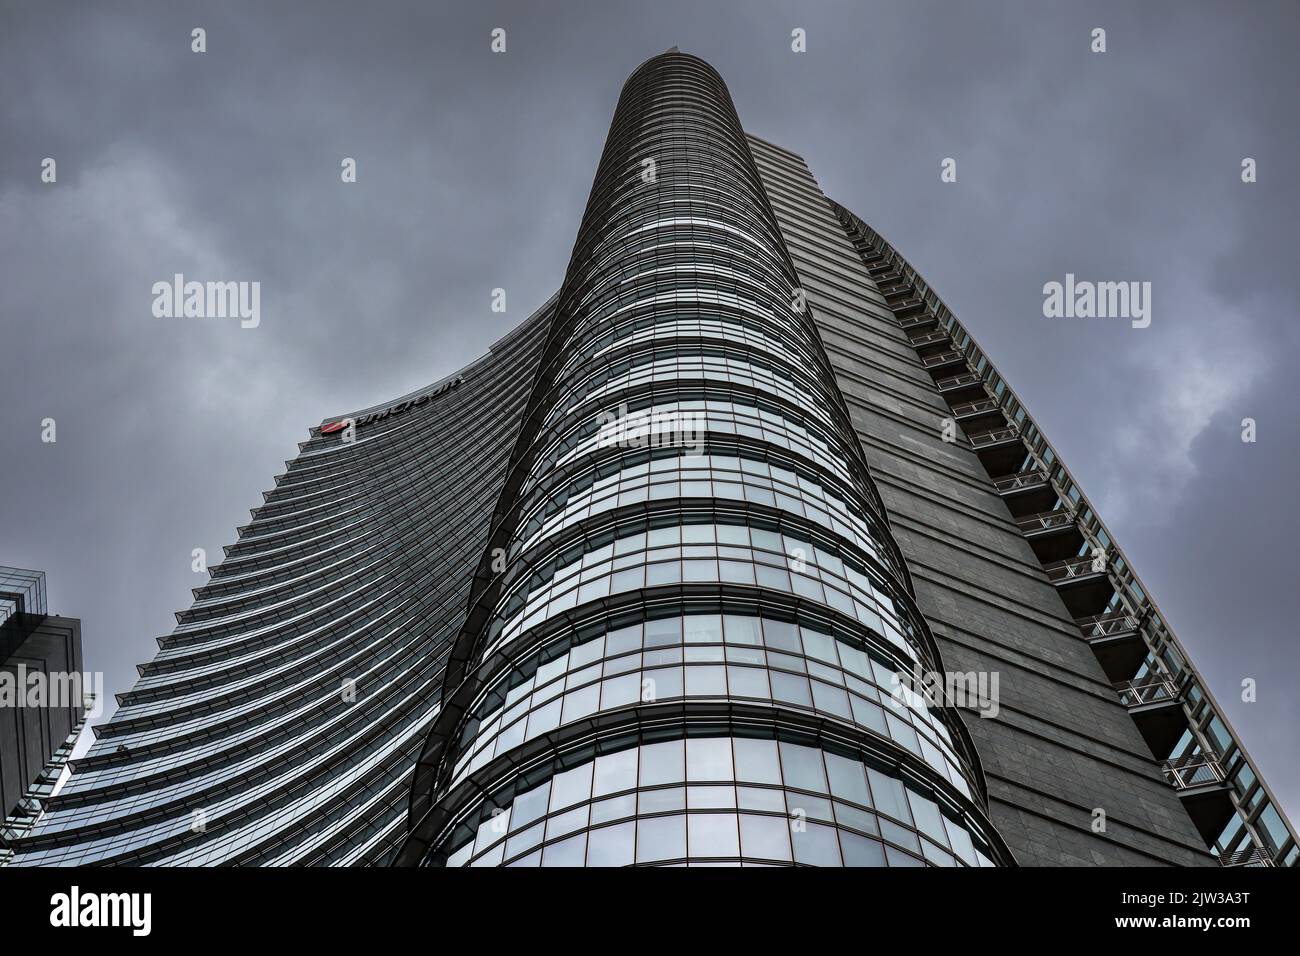 Milano, Italia - 26 giugno 2022: Vista dal basso del Glass Skyscraper nel quartiere di porta Nuova. Architettura moderna di UniCredit Tower con cielo nuvoloso. Foto Stock